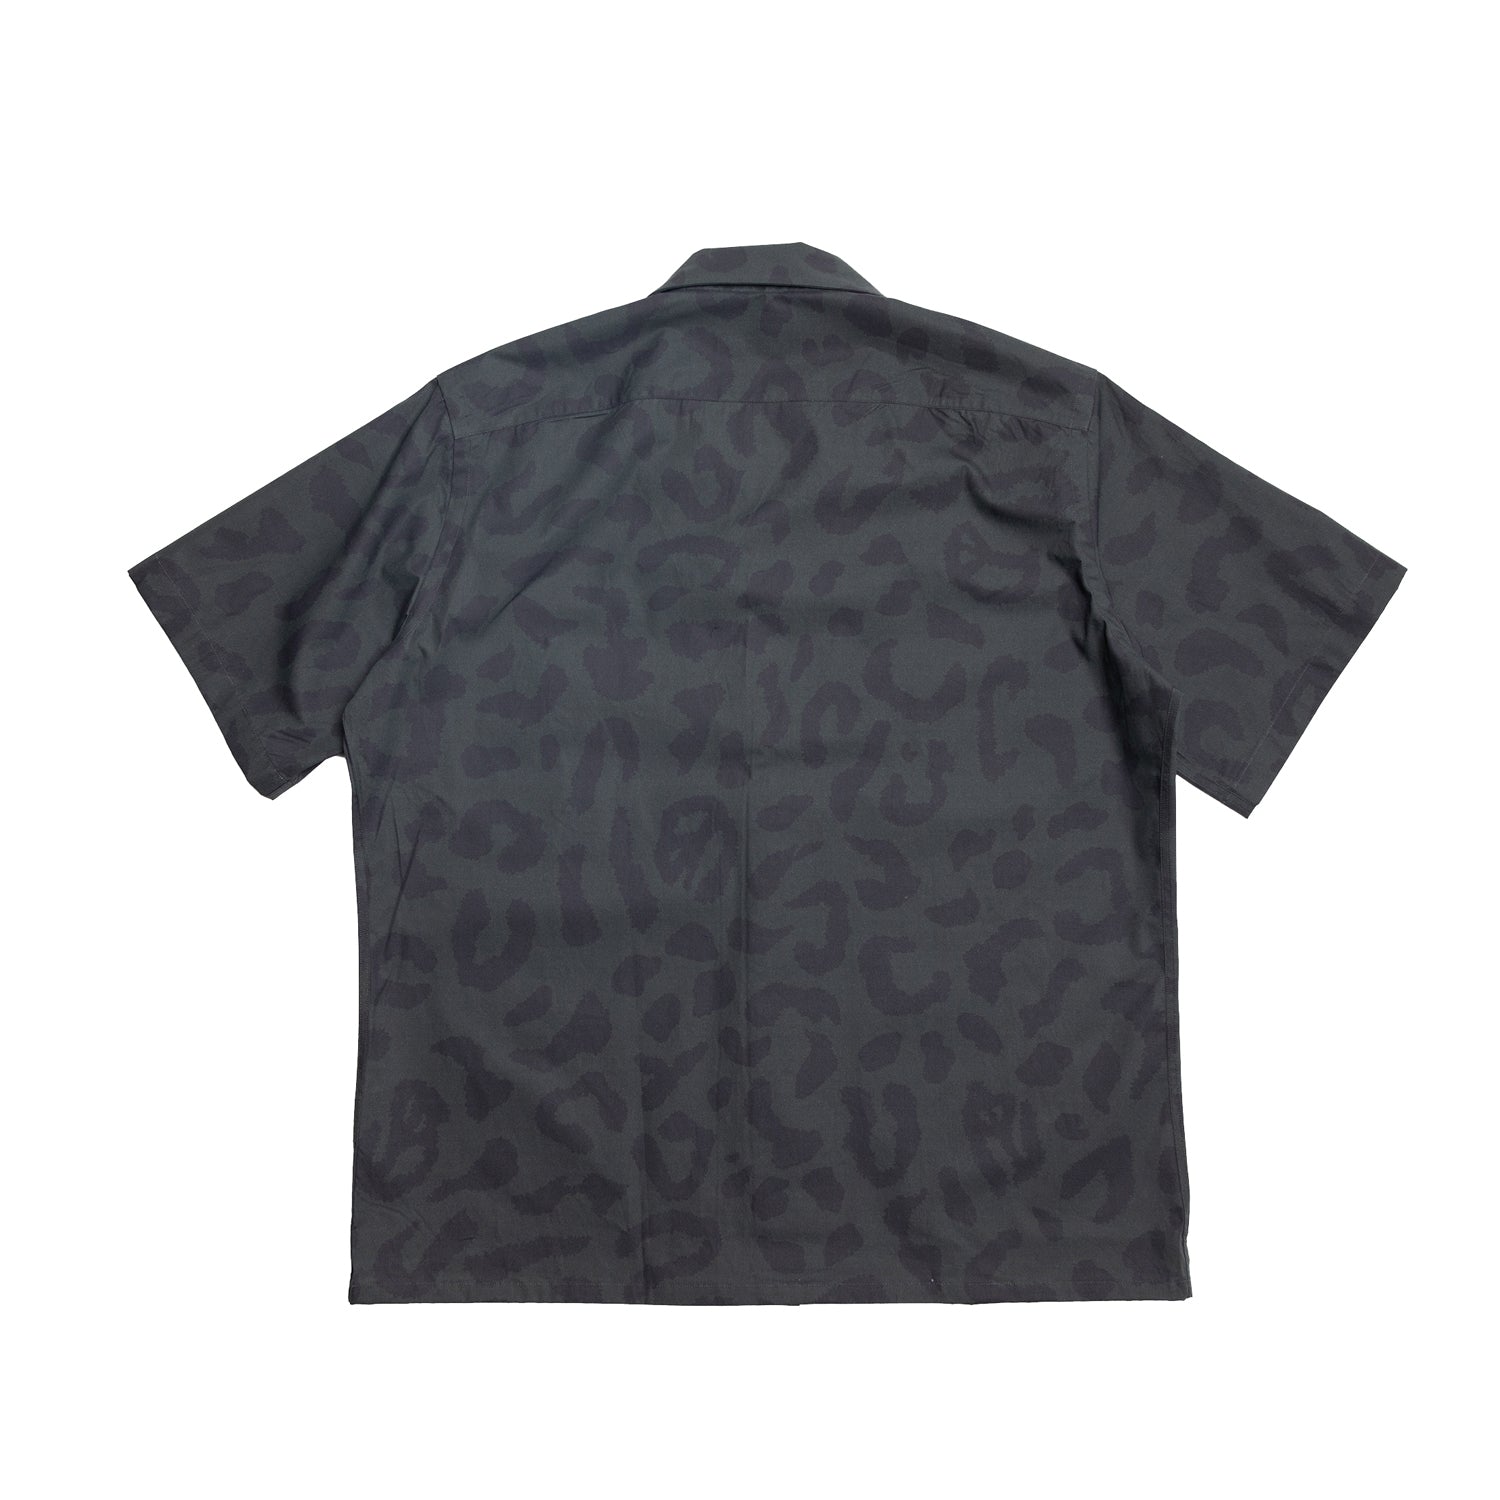 Leopard Peace Camo Shirt